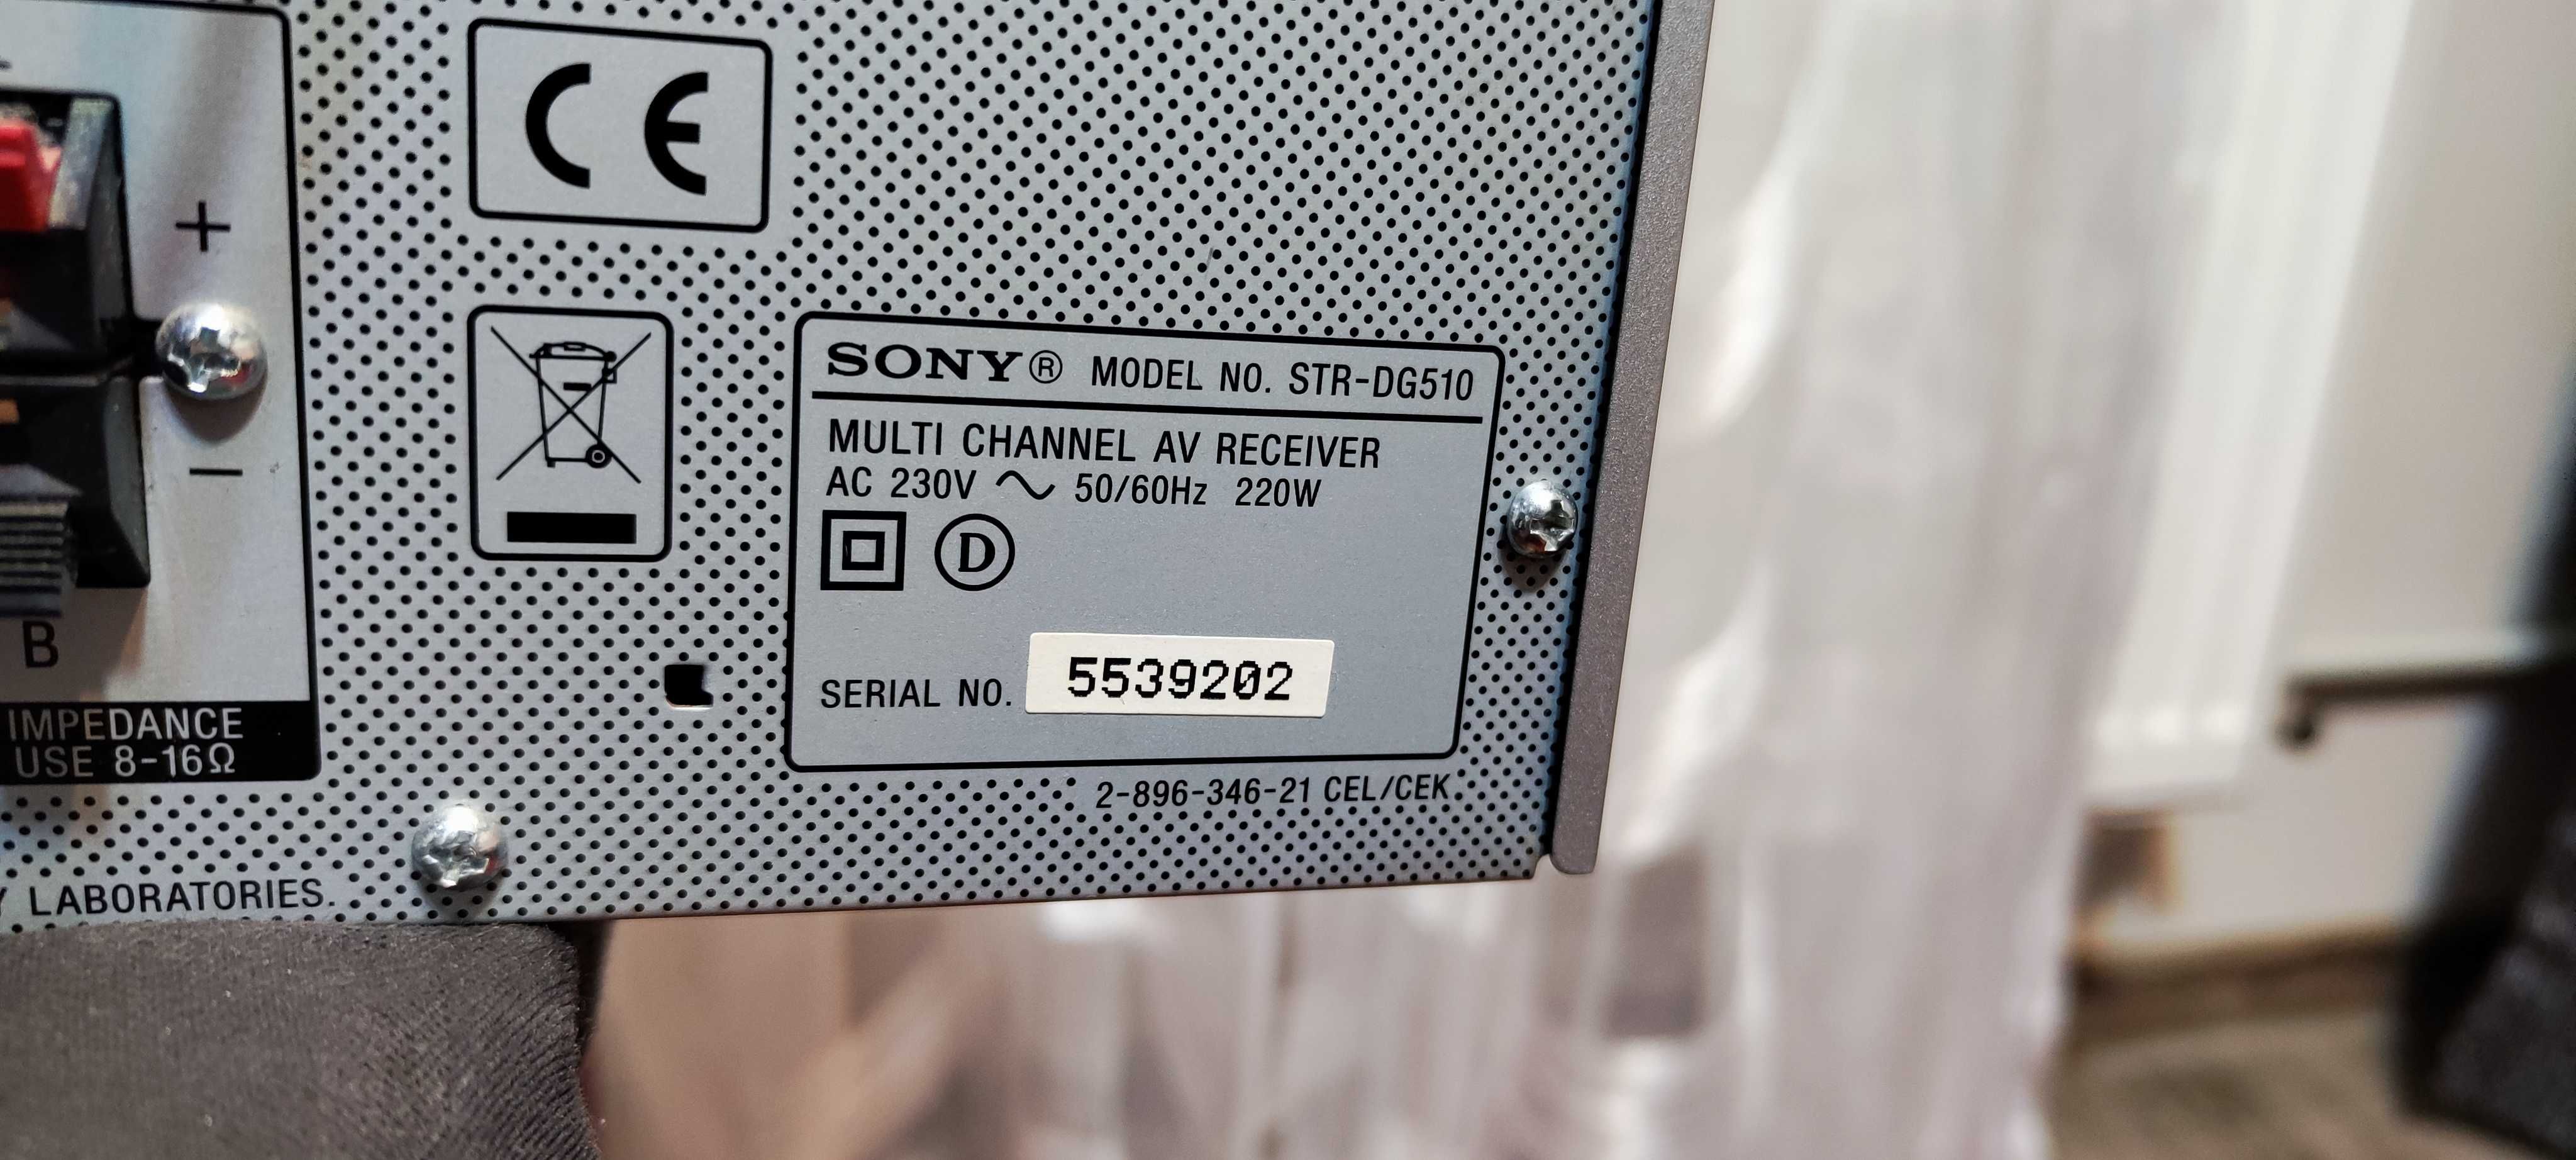 Amplificator Audio Sony STR-DG510 Statie Audio Amplituner